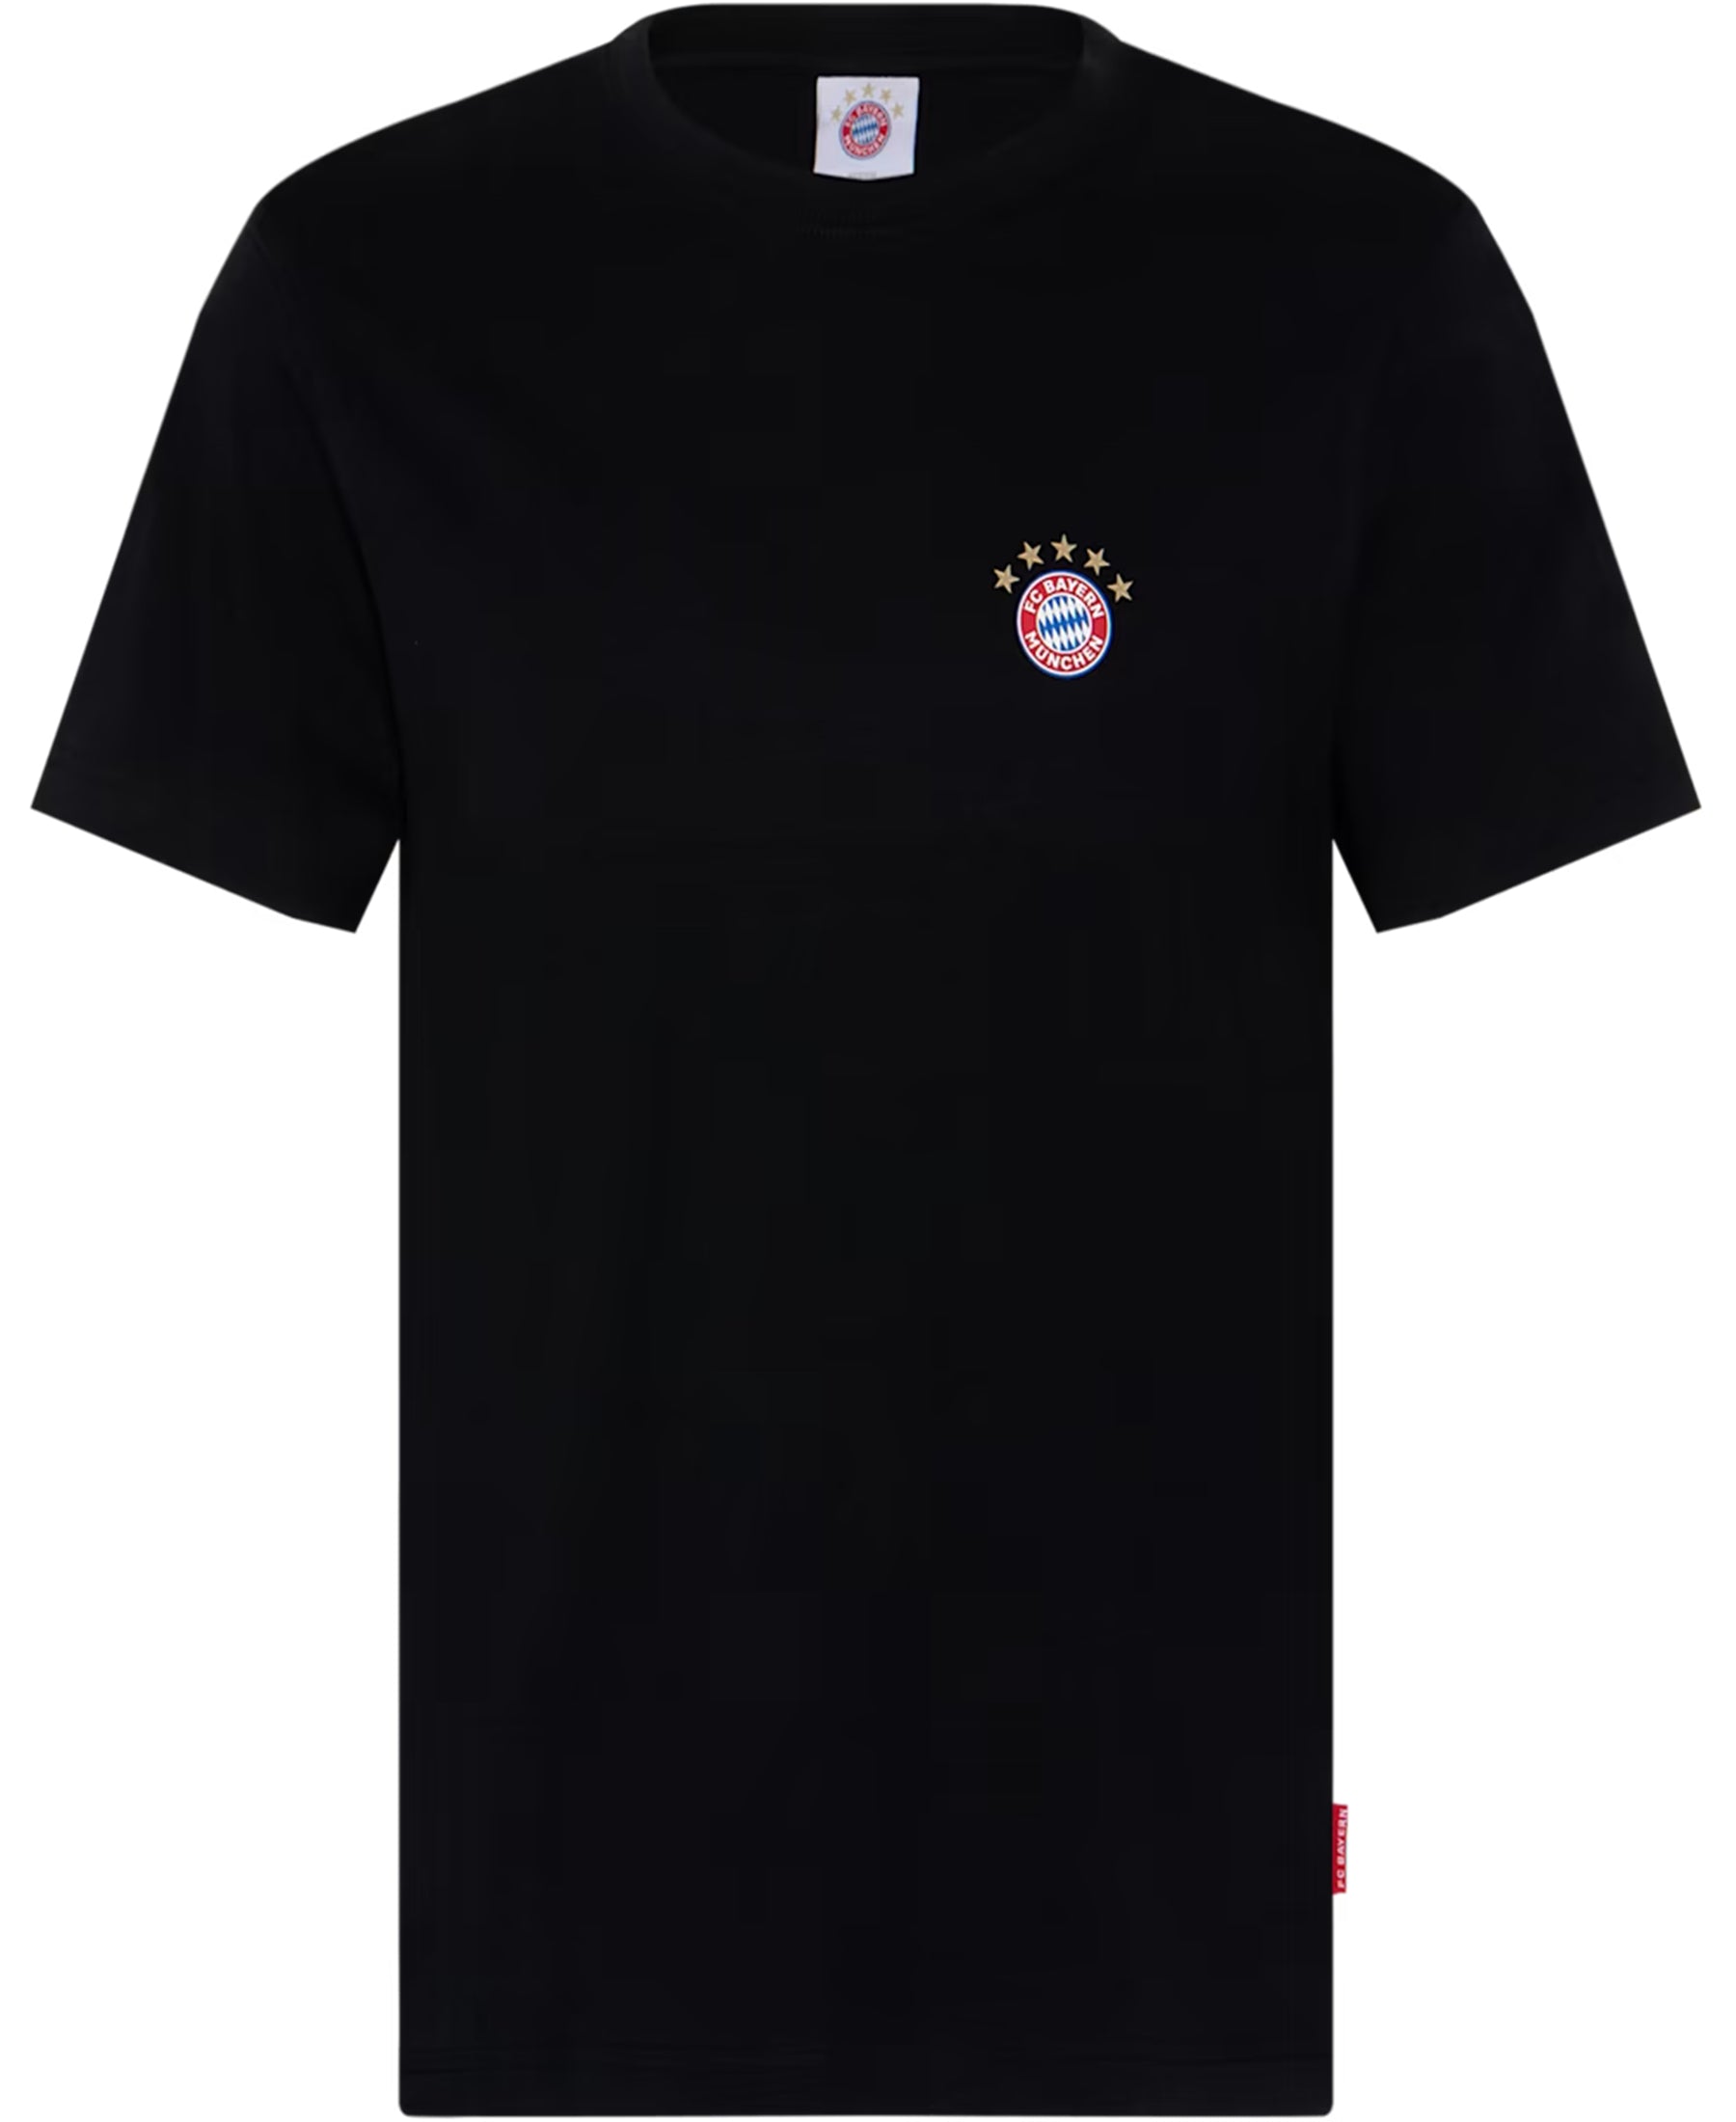 Hol dir das offizielle FC Bayern München Logo T-Shirt (30421) und zeige deine Liebe zum Verein. Dieses hochwertige Shirt verkörpert Stil und Leidenschaft für den FCB. Erhältlich bei SHOP4TEAMSPORT - dein Shop für erstklassige Fanartikel. Trage deinen Stolz!